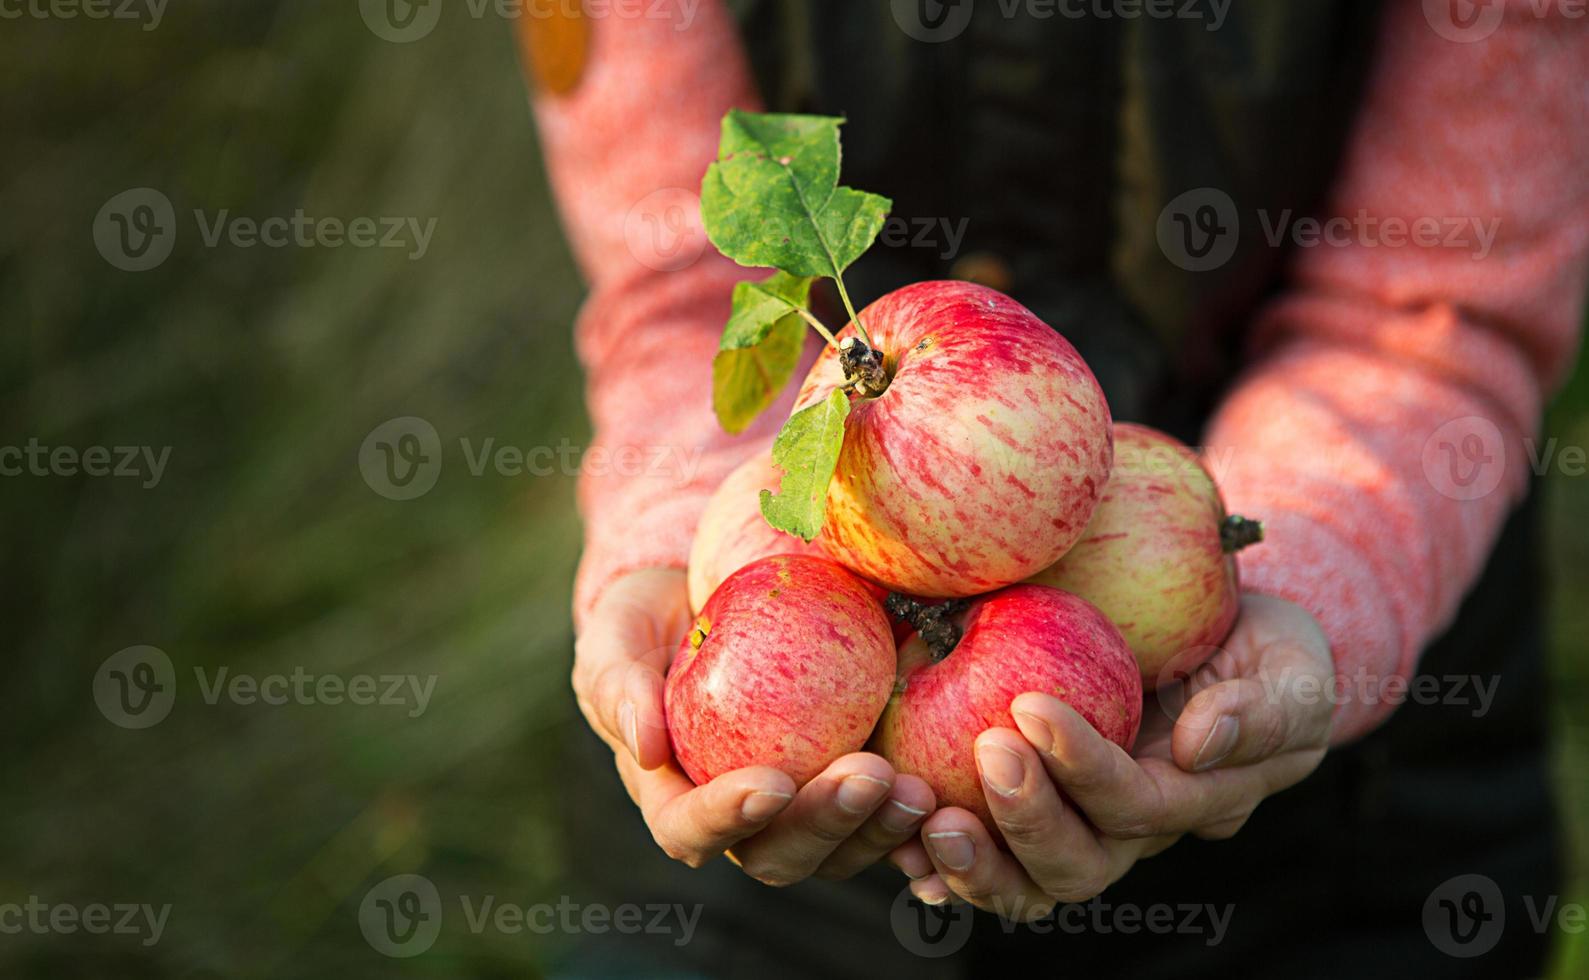 roze met strepen verse appels van takken in handen van vrouwen op een donkergroene achtergrond. herfst oogstfeest, landbouw, tuinieren, Thanksgiving. warme sfeer, natuurlijke milieuvriendelijke producten foto